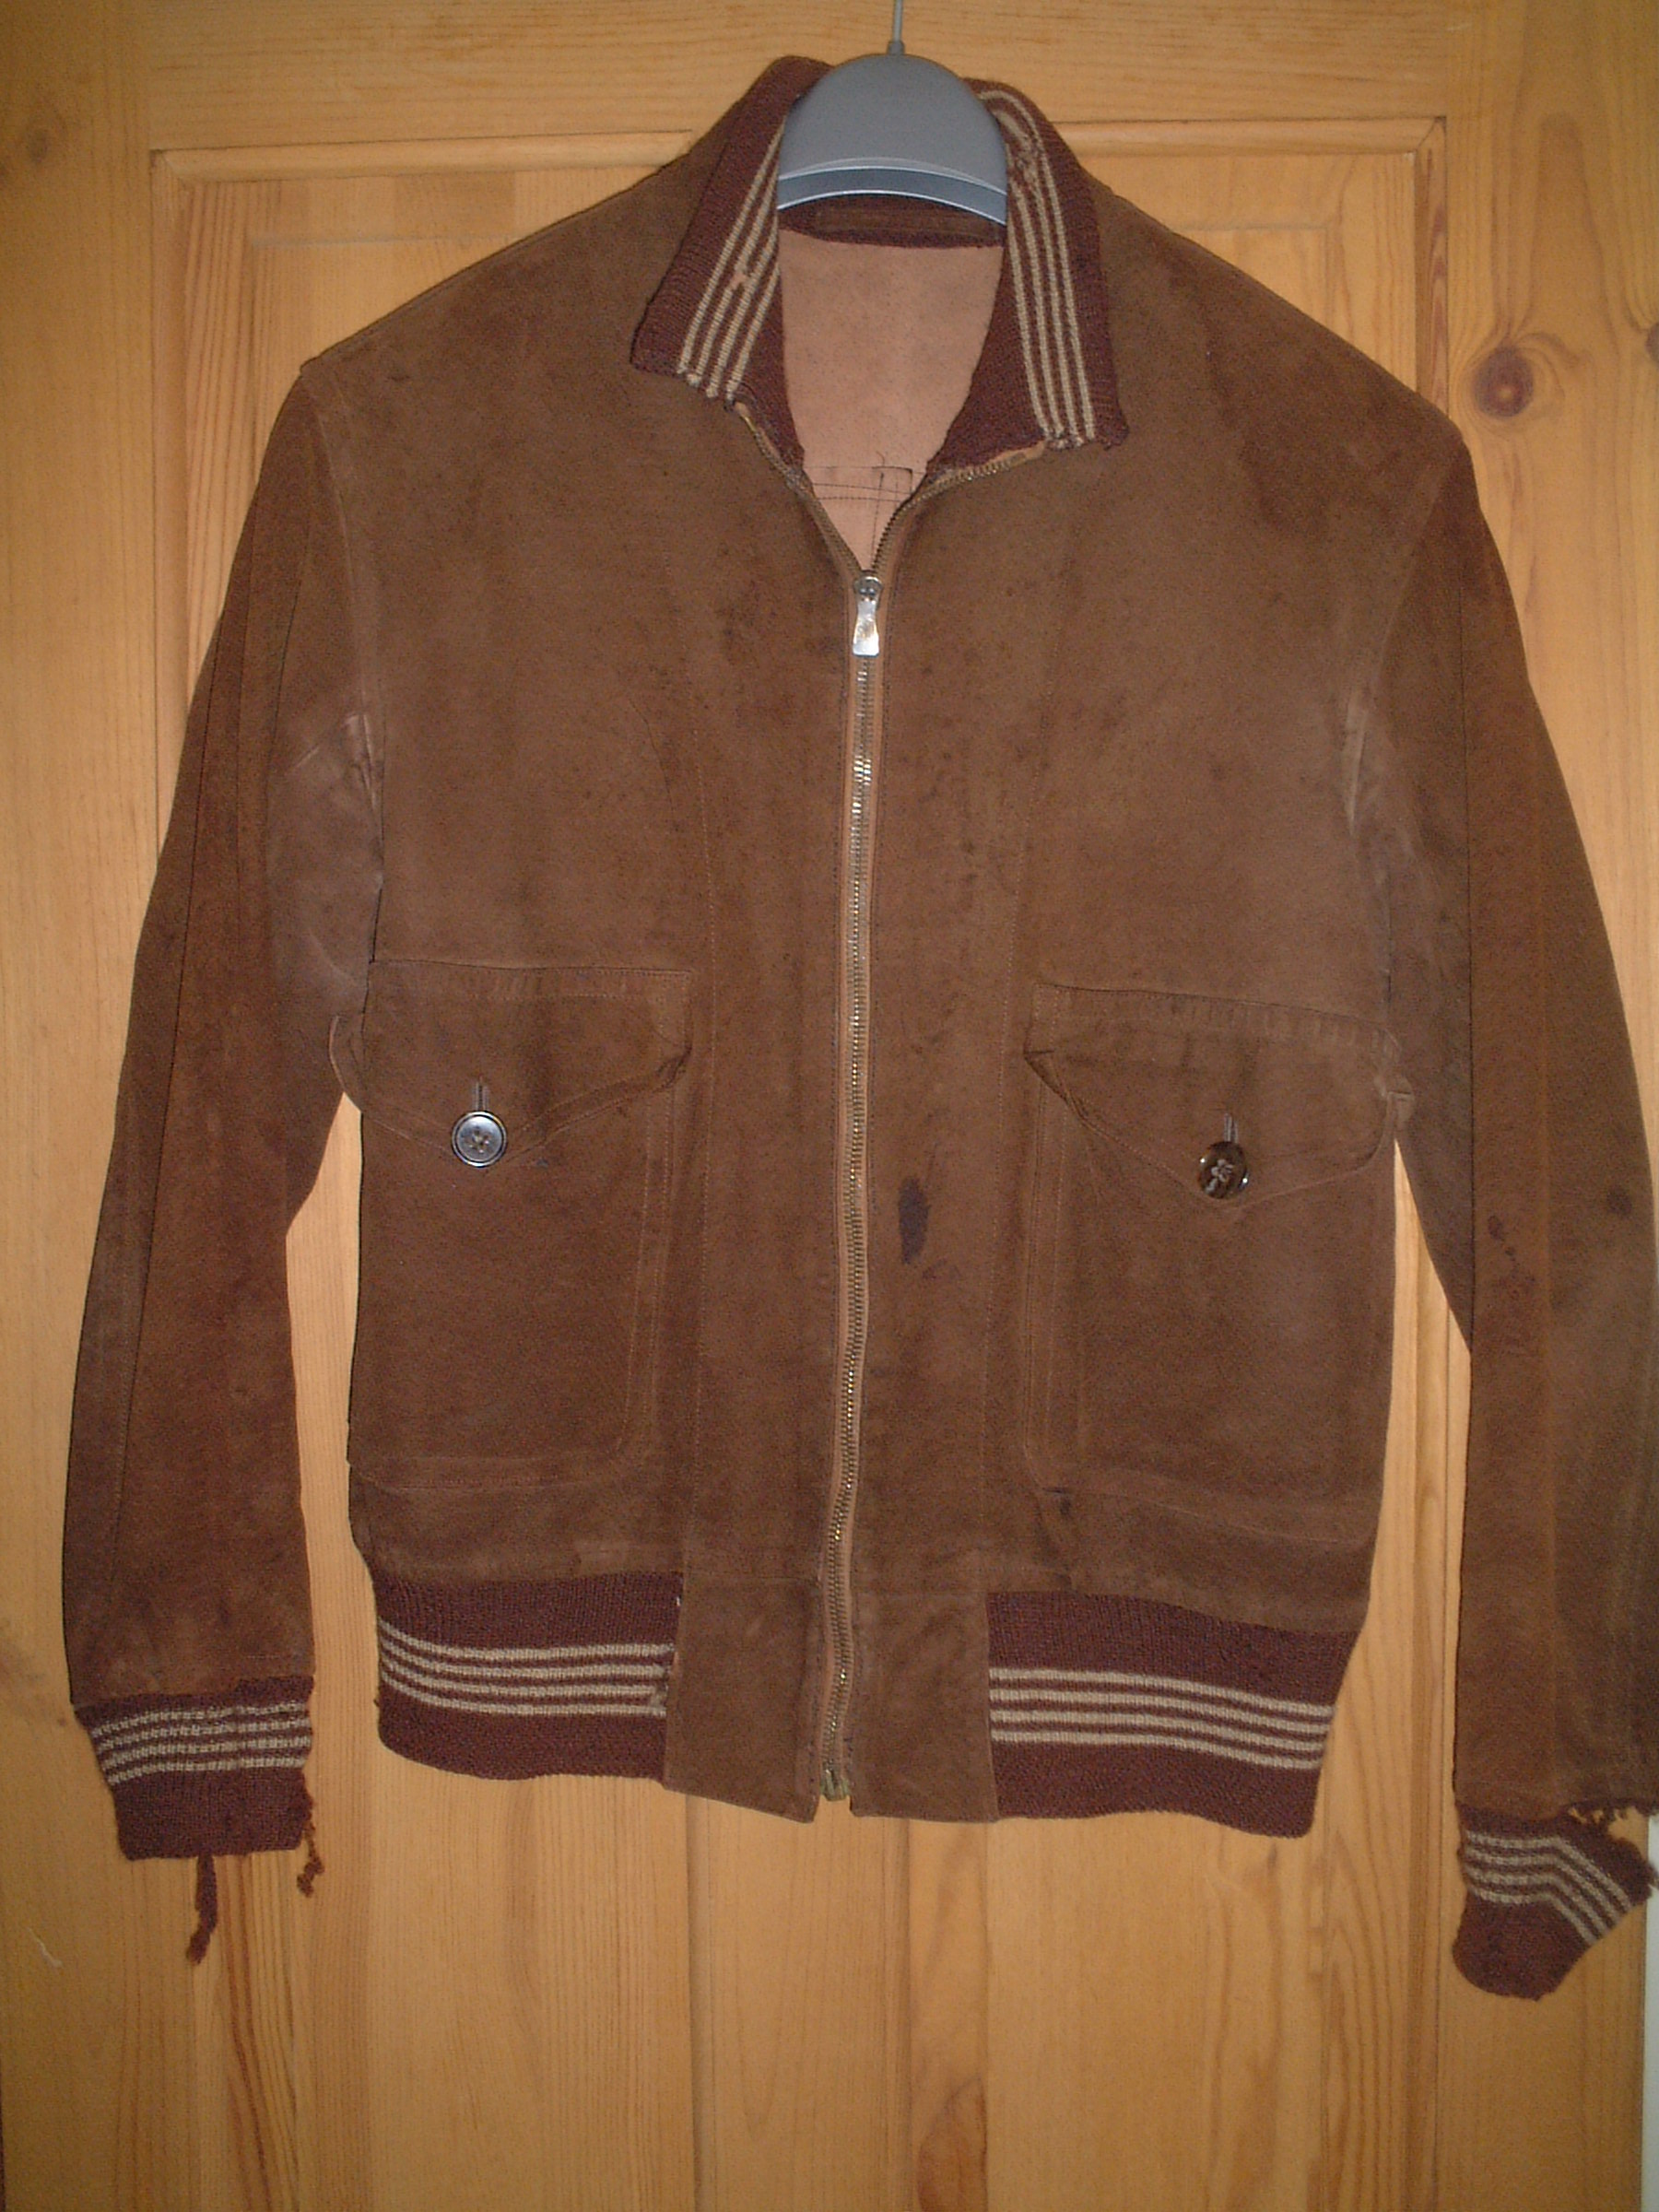 Help Dating Vintage Lightning Zip | Vintage Leather Jackets Forum